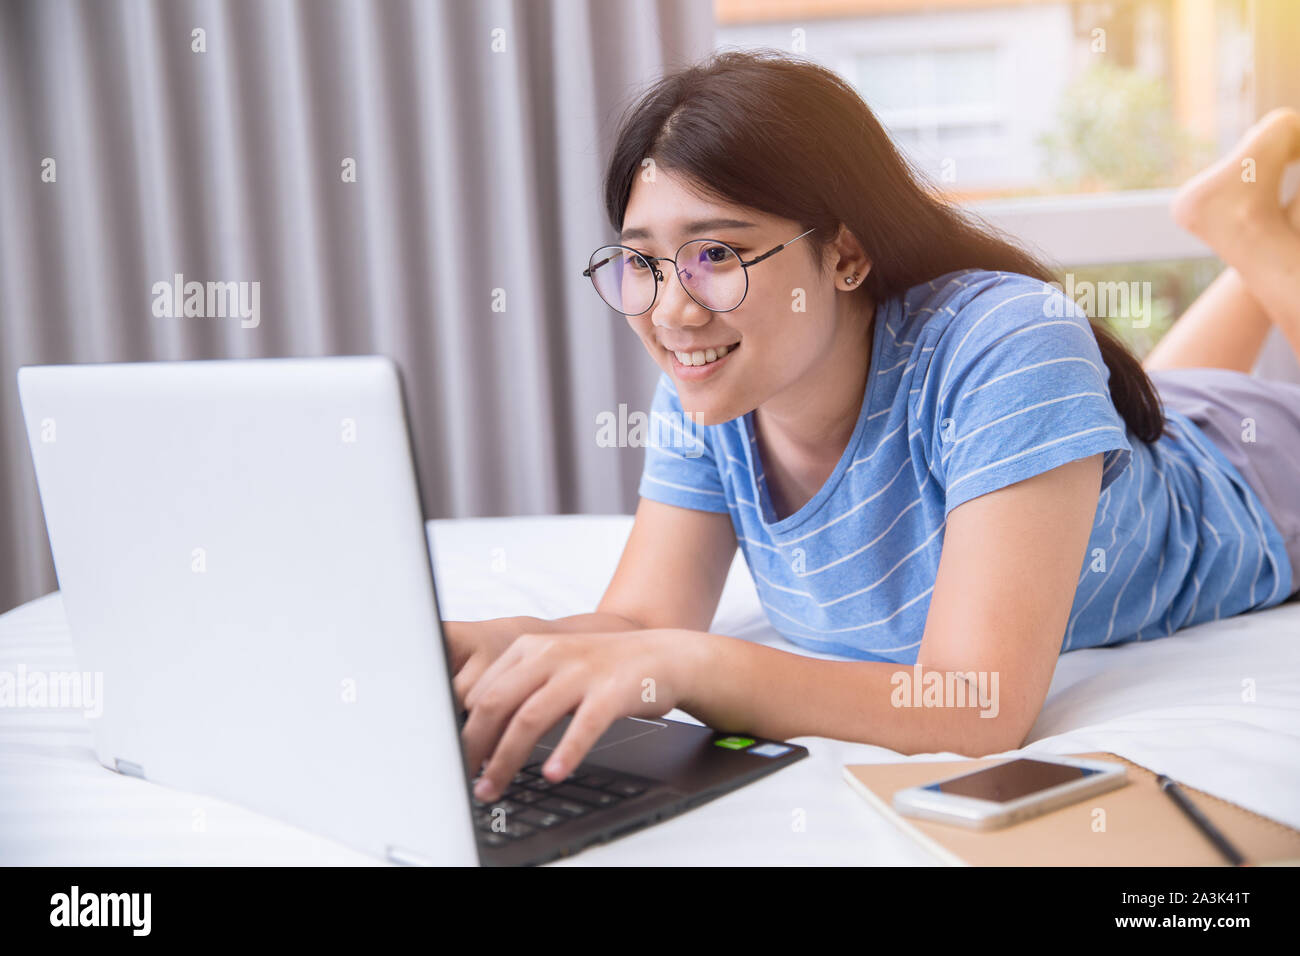 Girl Teen da stupidi sorriso lavorando compiti o chattare con gli amici tramite un pc portatile sul letto giorno del fine settimana. Foto Stock